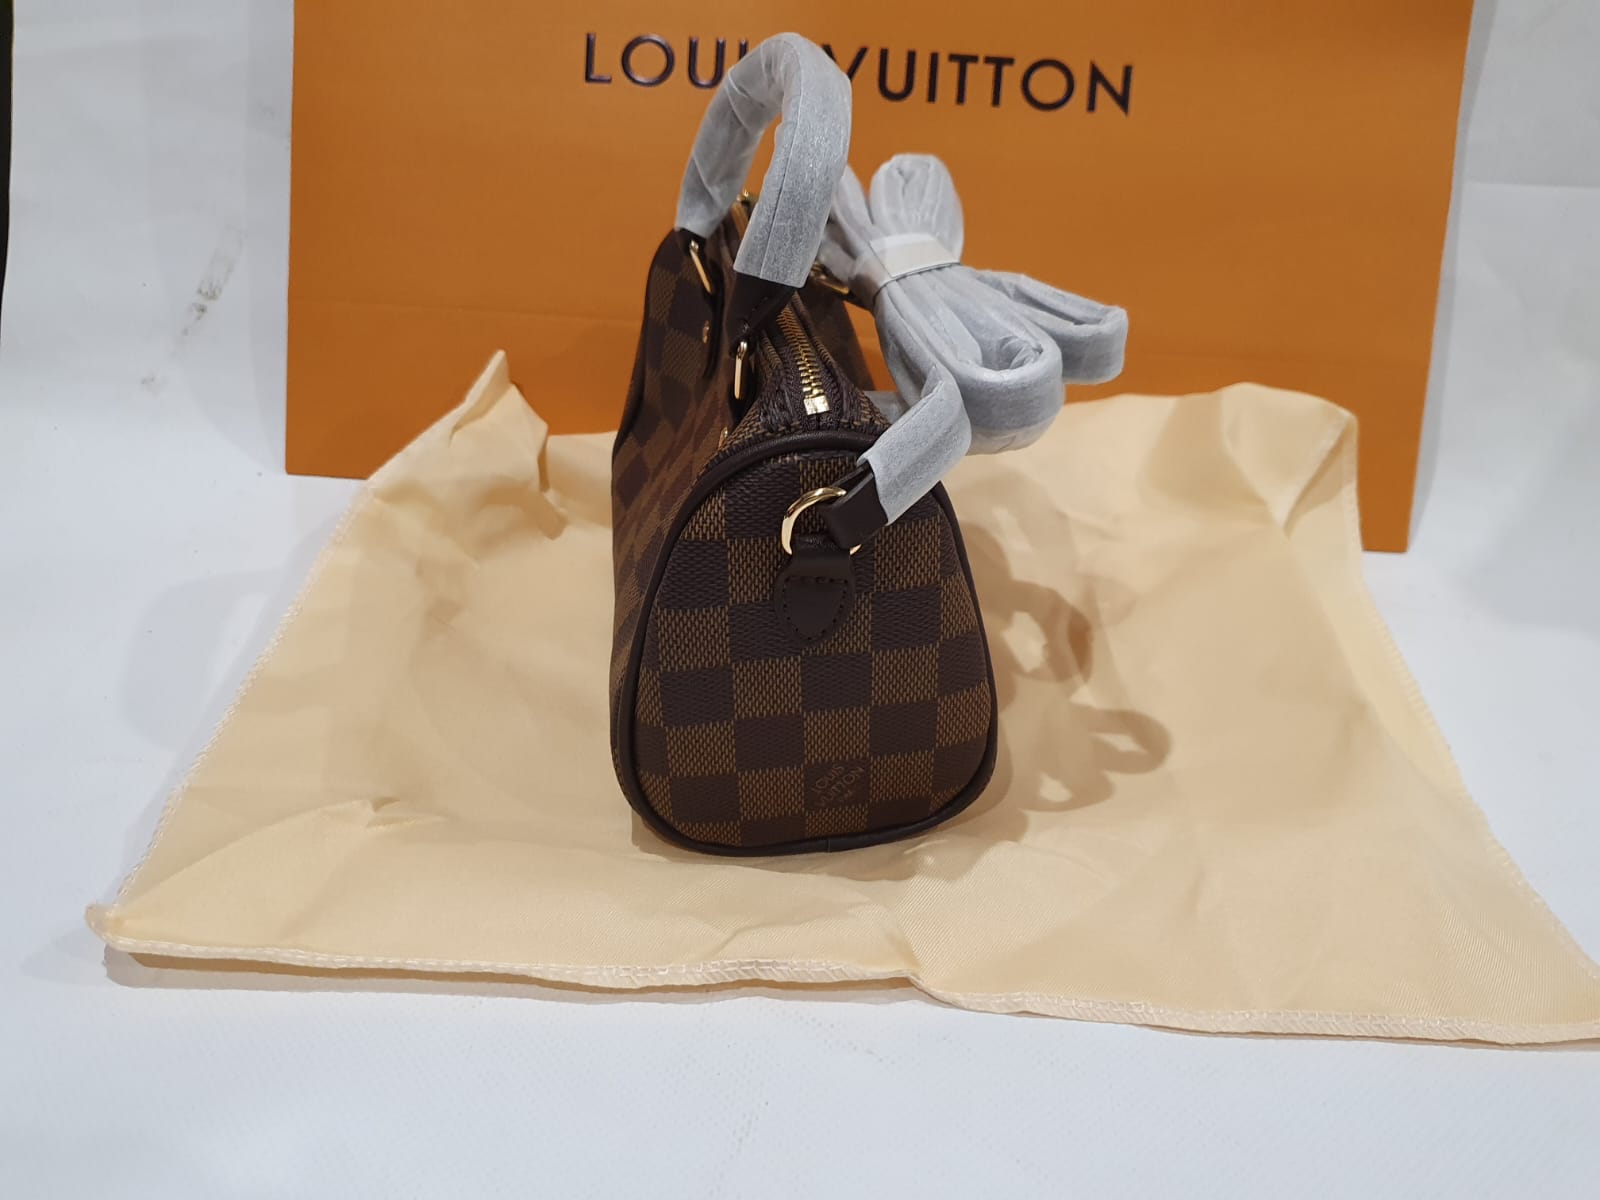 Louis Vuitton Speedy mini handbag